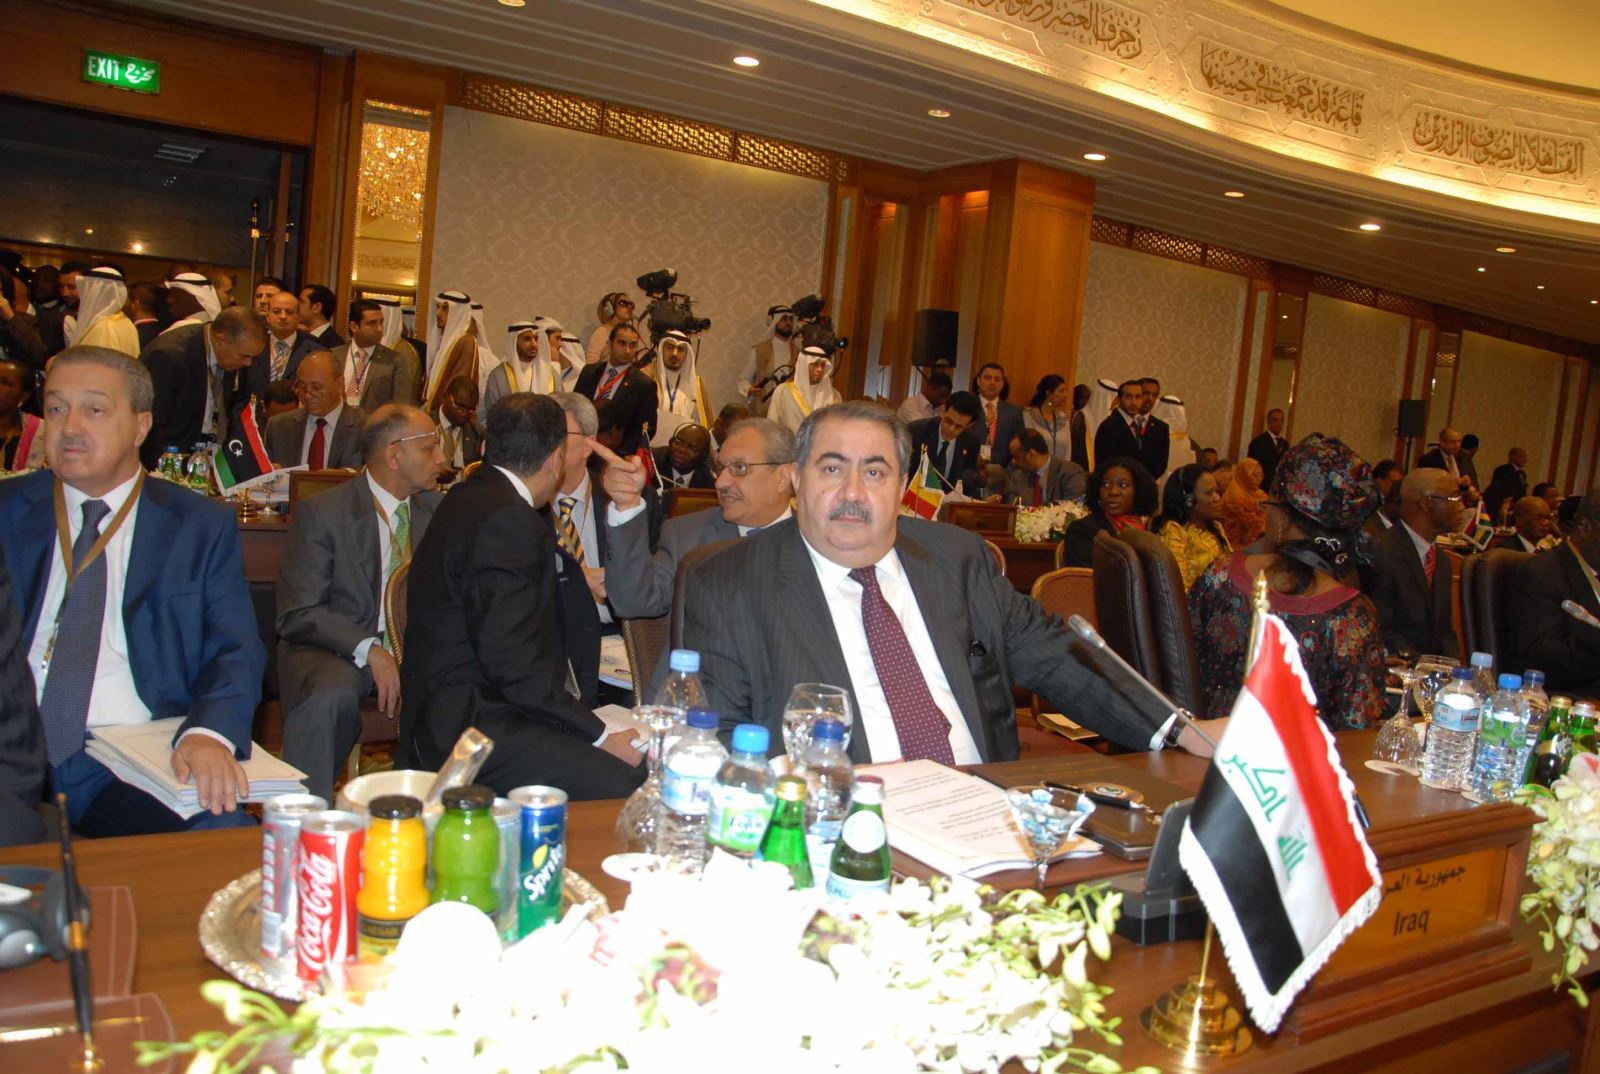 وزير خارجية العراق هوشيار زيباري في قاعة المؤتمر